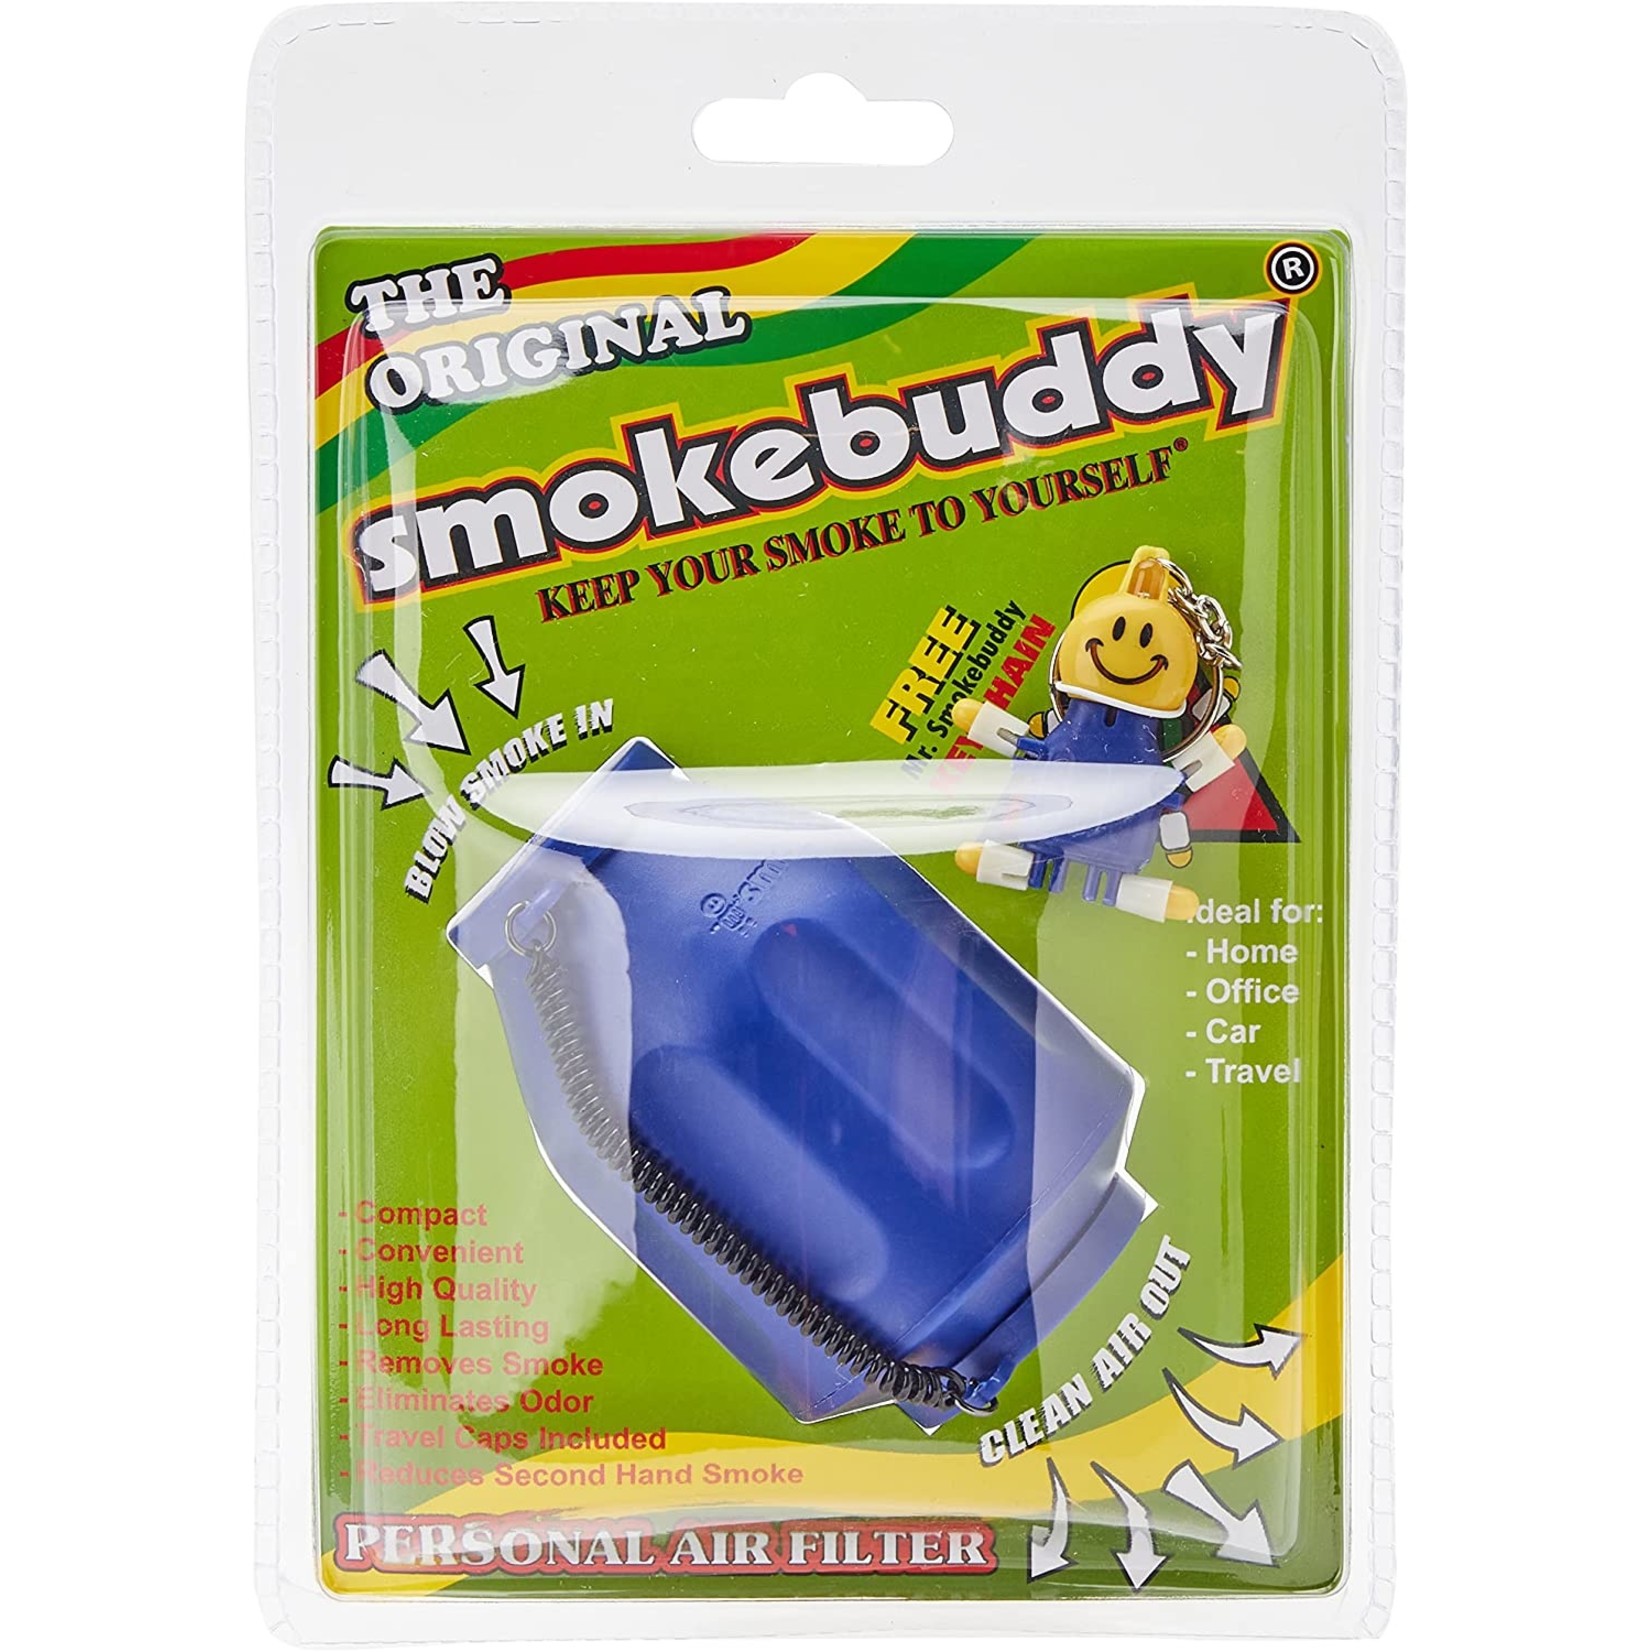 Smoke buddies Smoke Buddy 0159-BLU Personal Air Filter, Blue